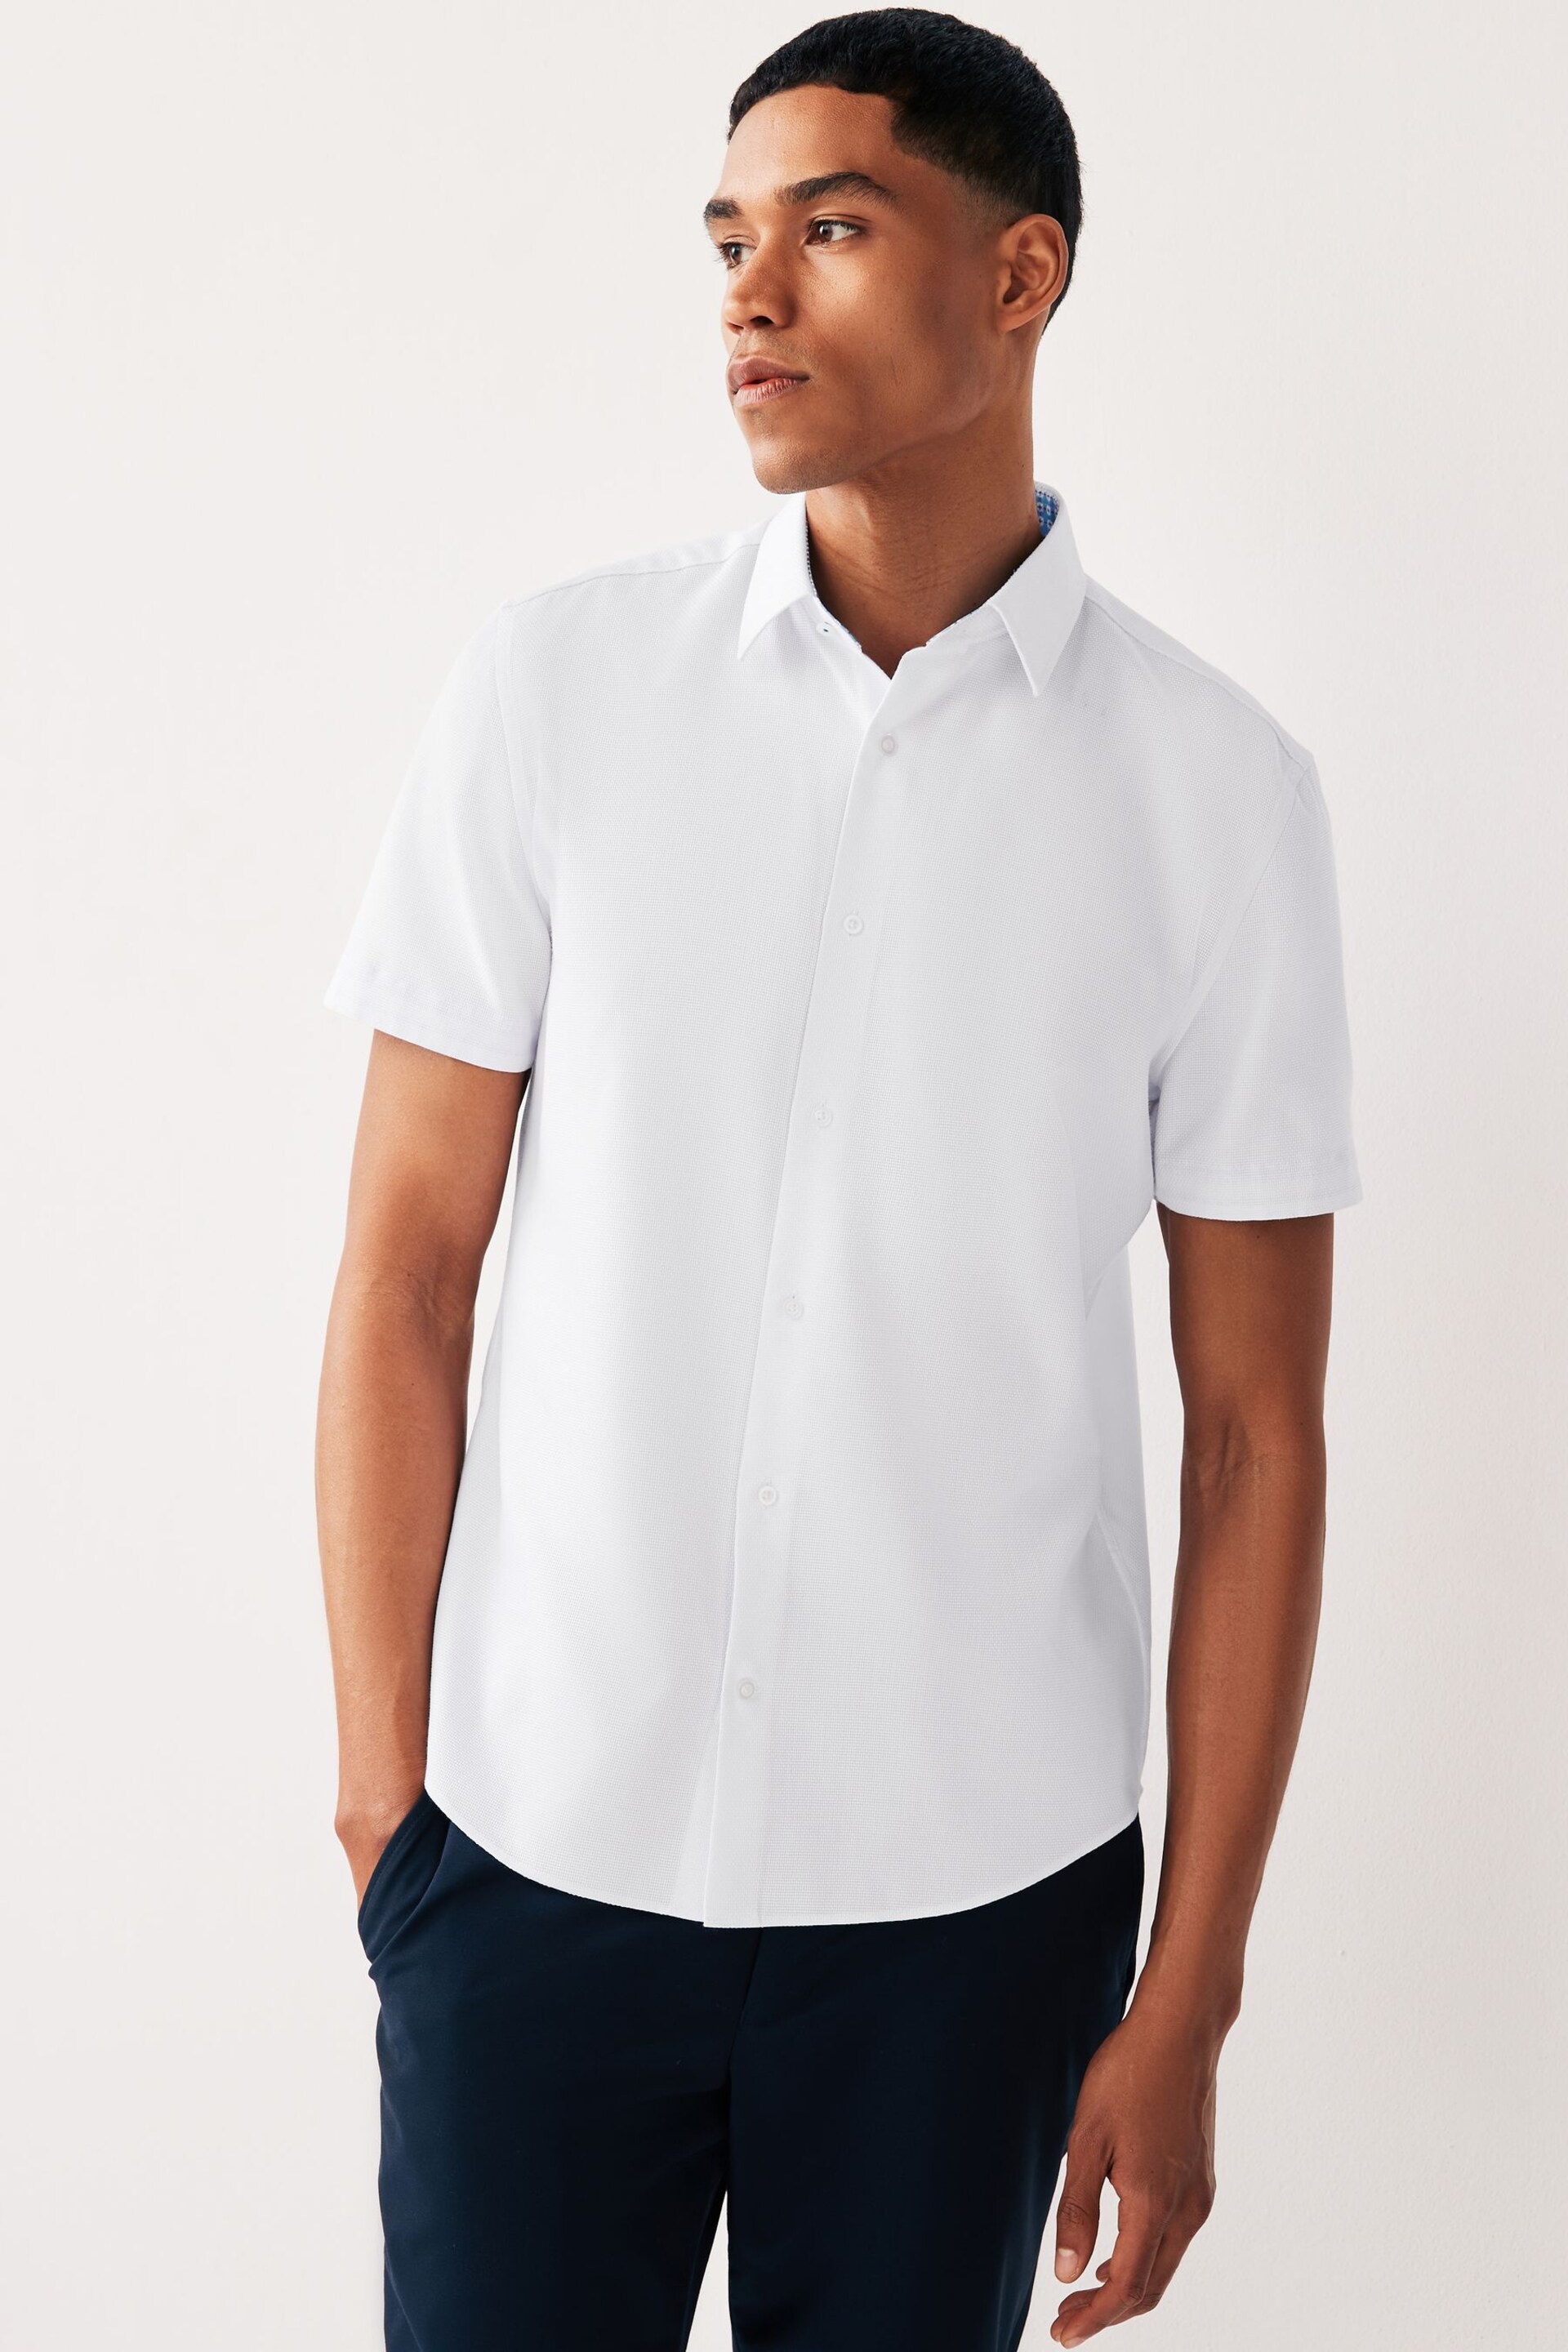 White Regular Fit Trimmed Formal Short Sleeve Shirt - Image 1 of 8